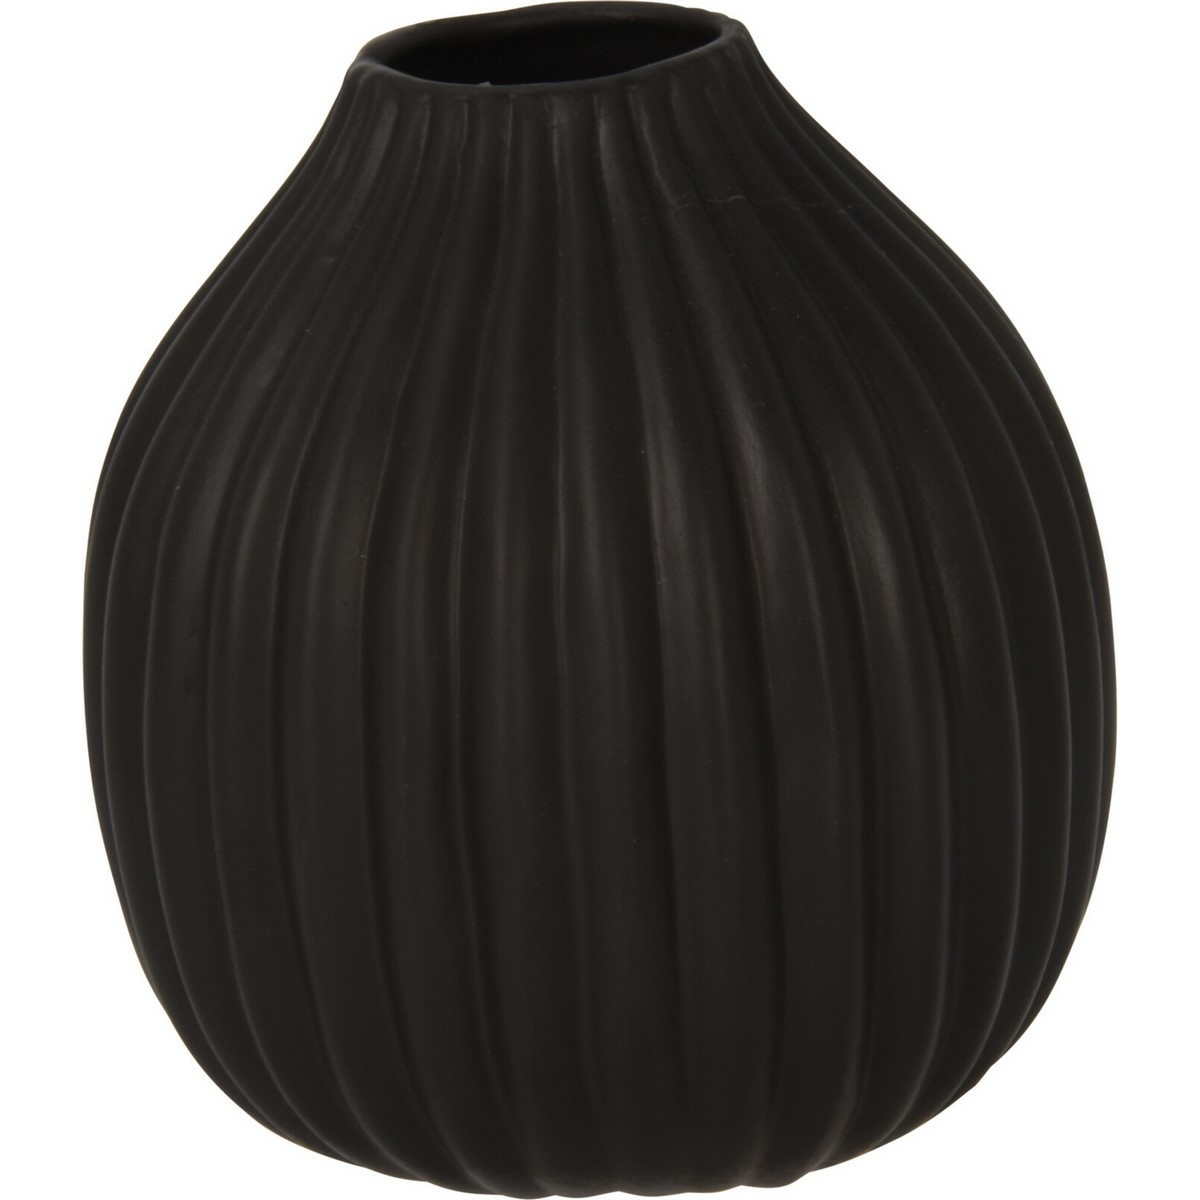 Žebrovaná váza Maeve černá, 12 x 14 cm, dolomit